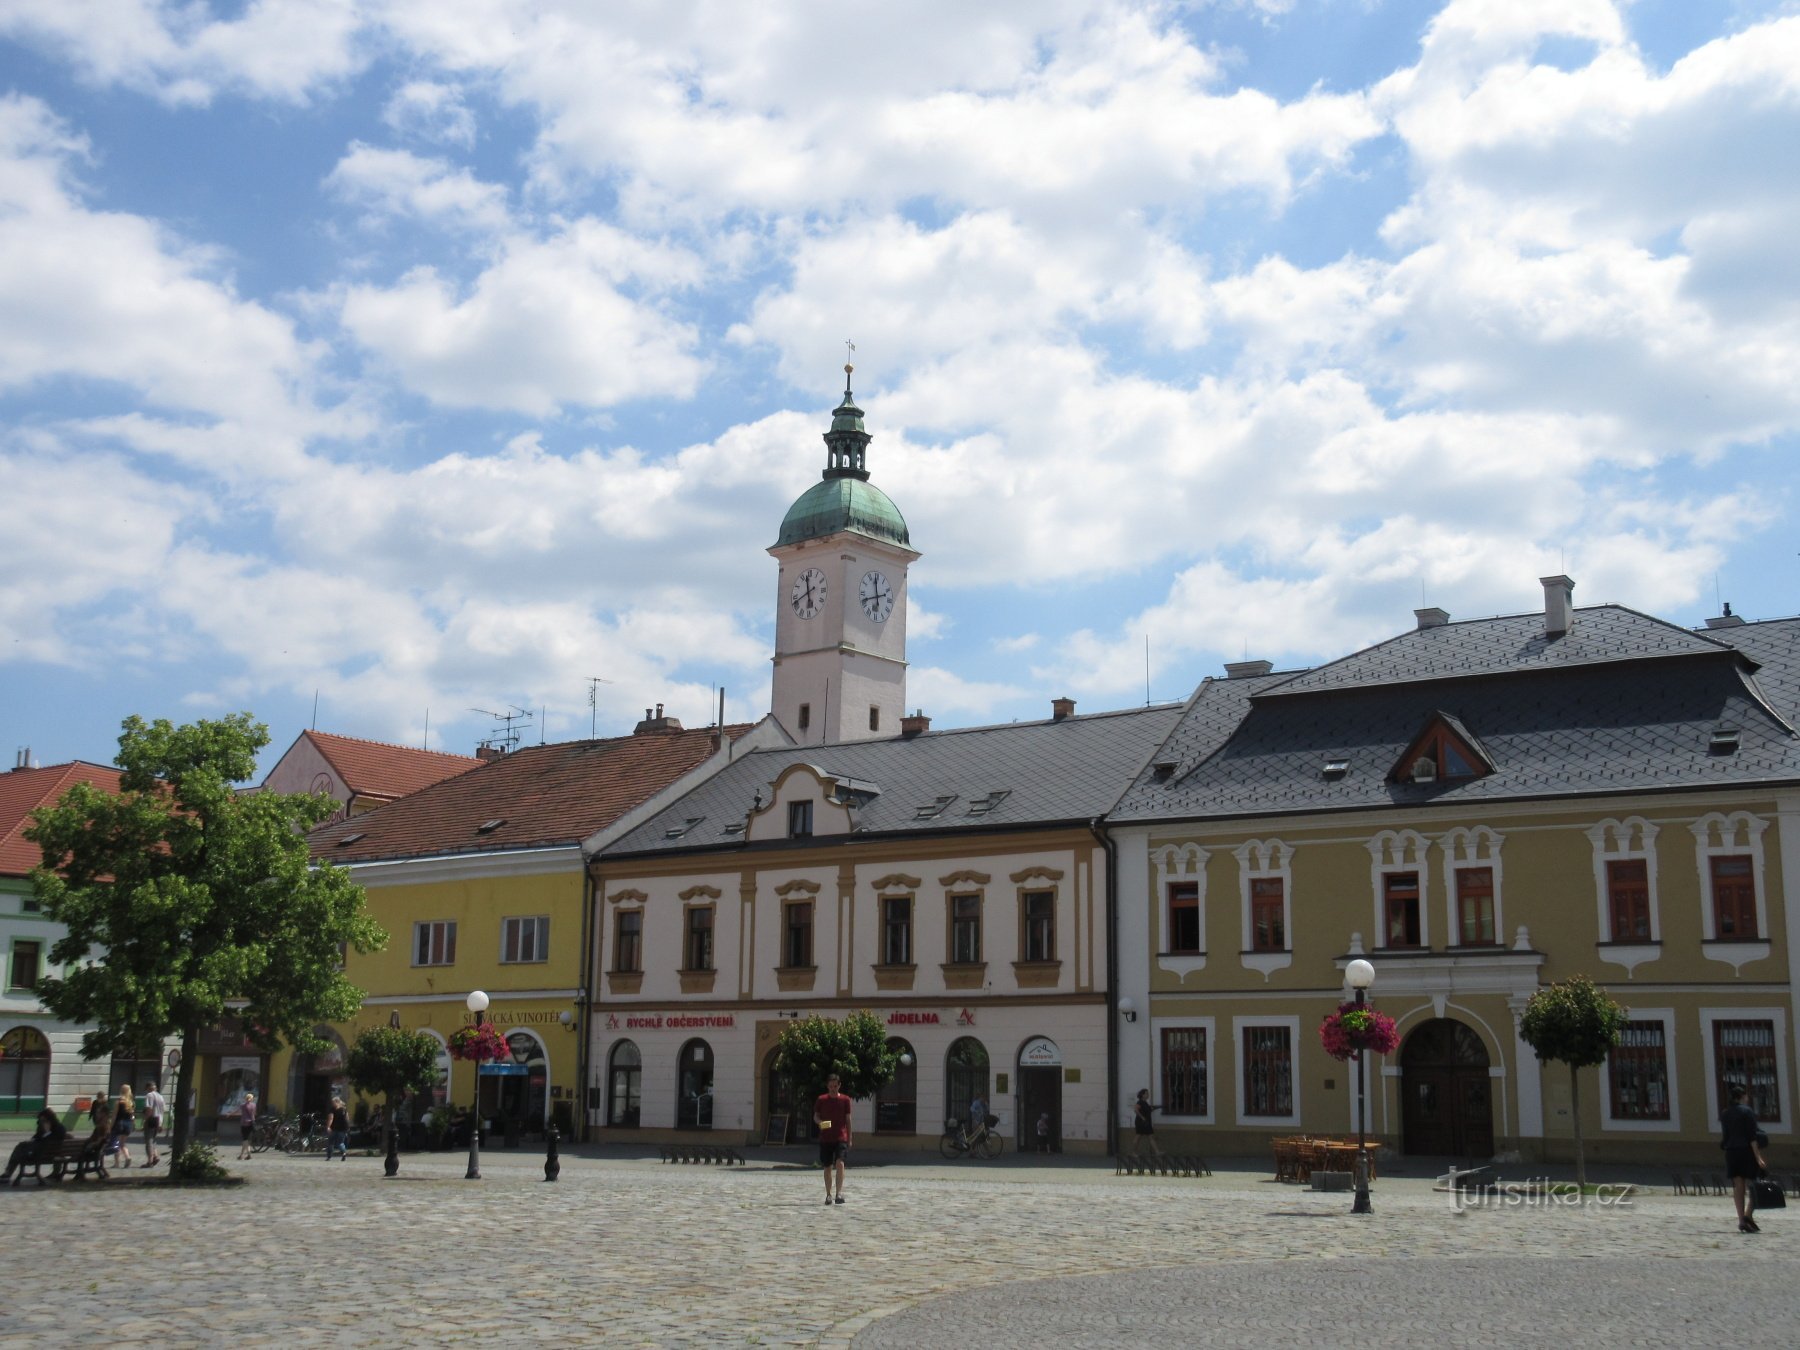 Mariánské náměstí - rechts ist das Haus U Sovy, hinter dem Turm des alten Rathauses